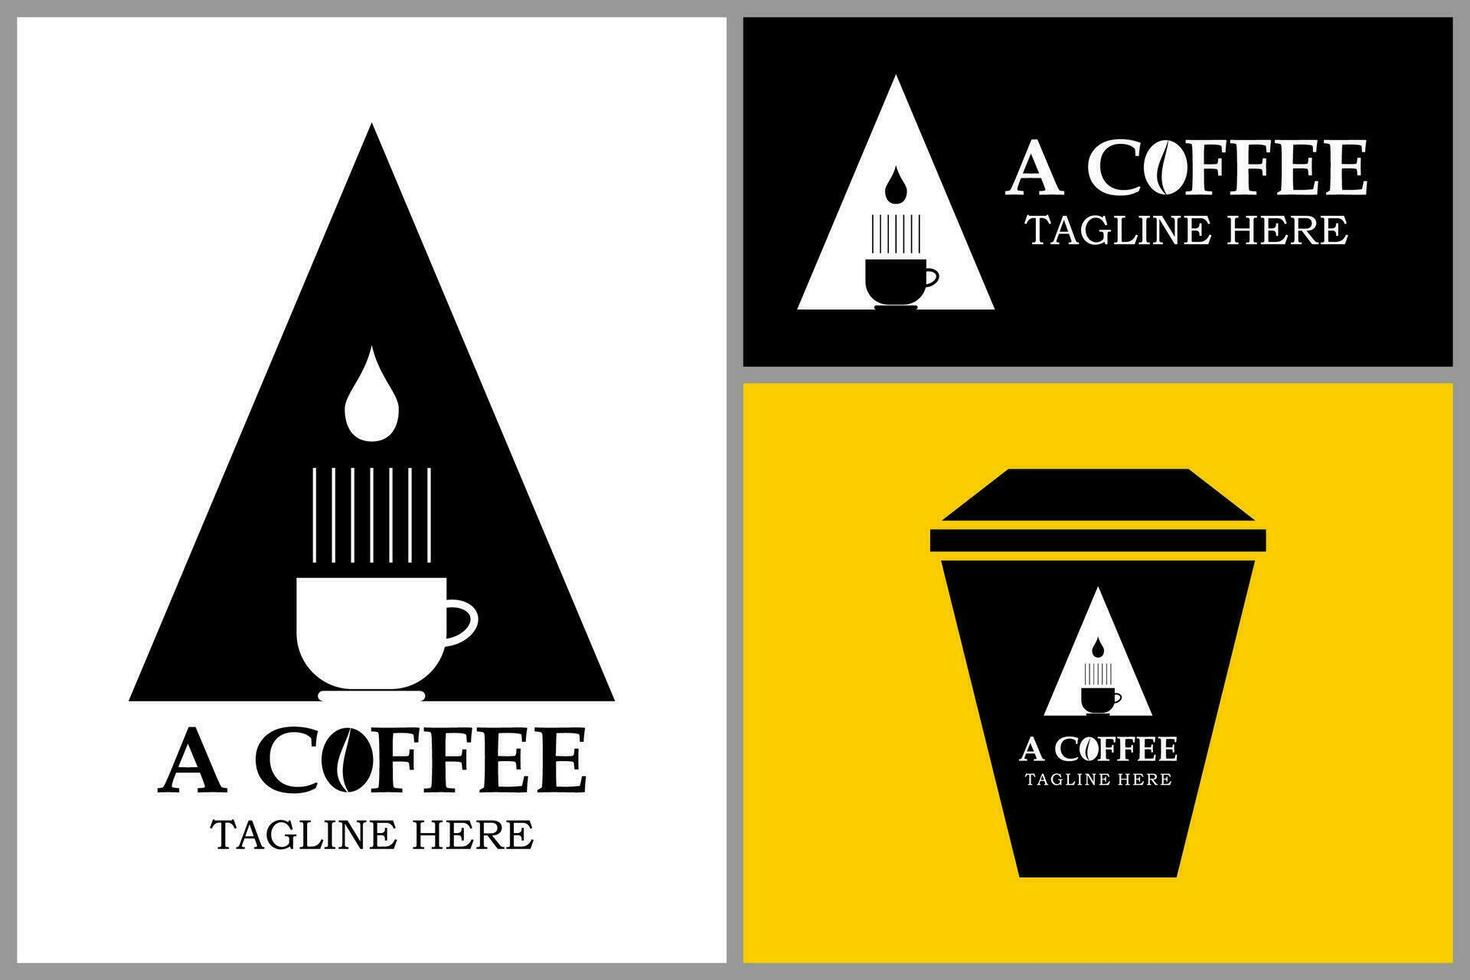 un café logo.cafe frijol con taza, adecuado para producto marca y logo de un cafe.vector ilustración vector